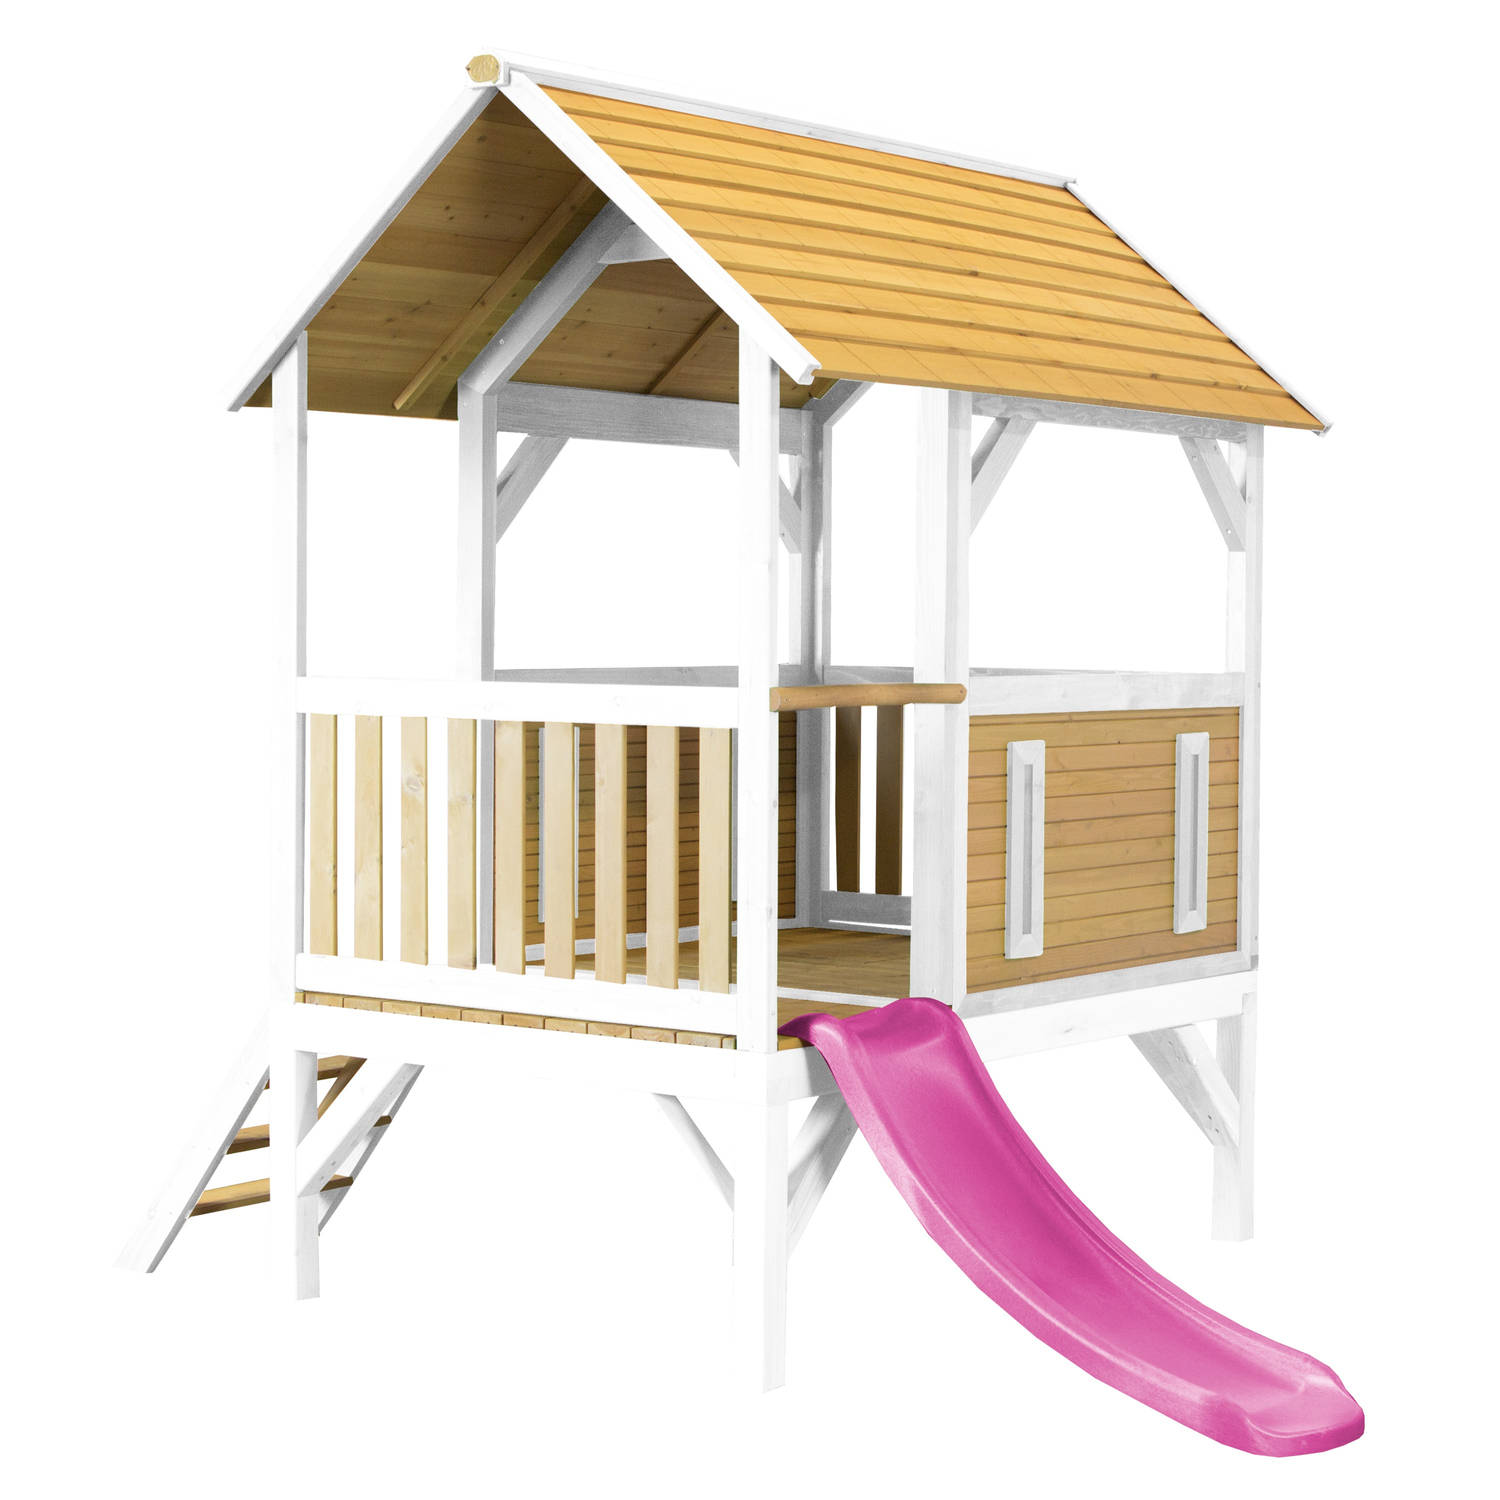 AXI Akela Speelhuis in Bruin/Wit - Paarse Glijbaan - Speelhuisje voor de tuin / buiten - FSC hout - Speeltoestel voor kinderen